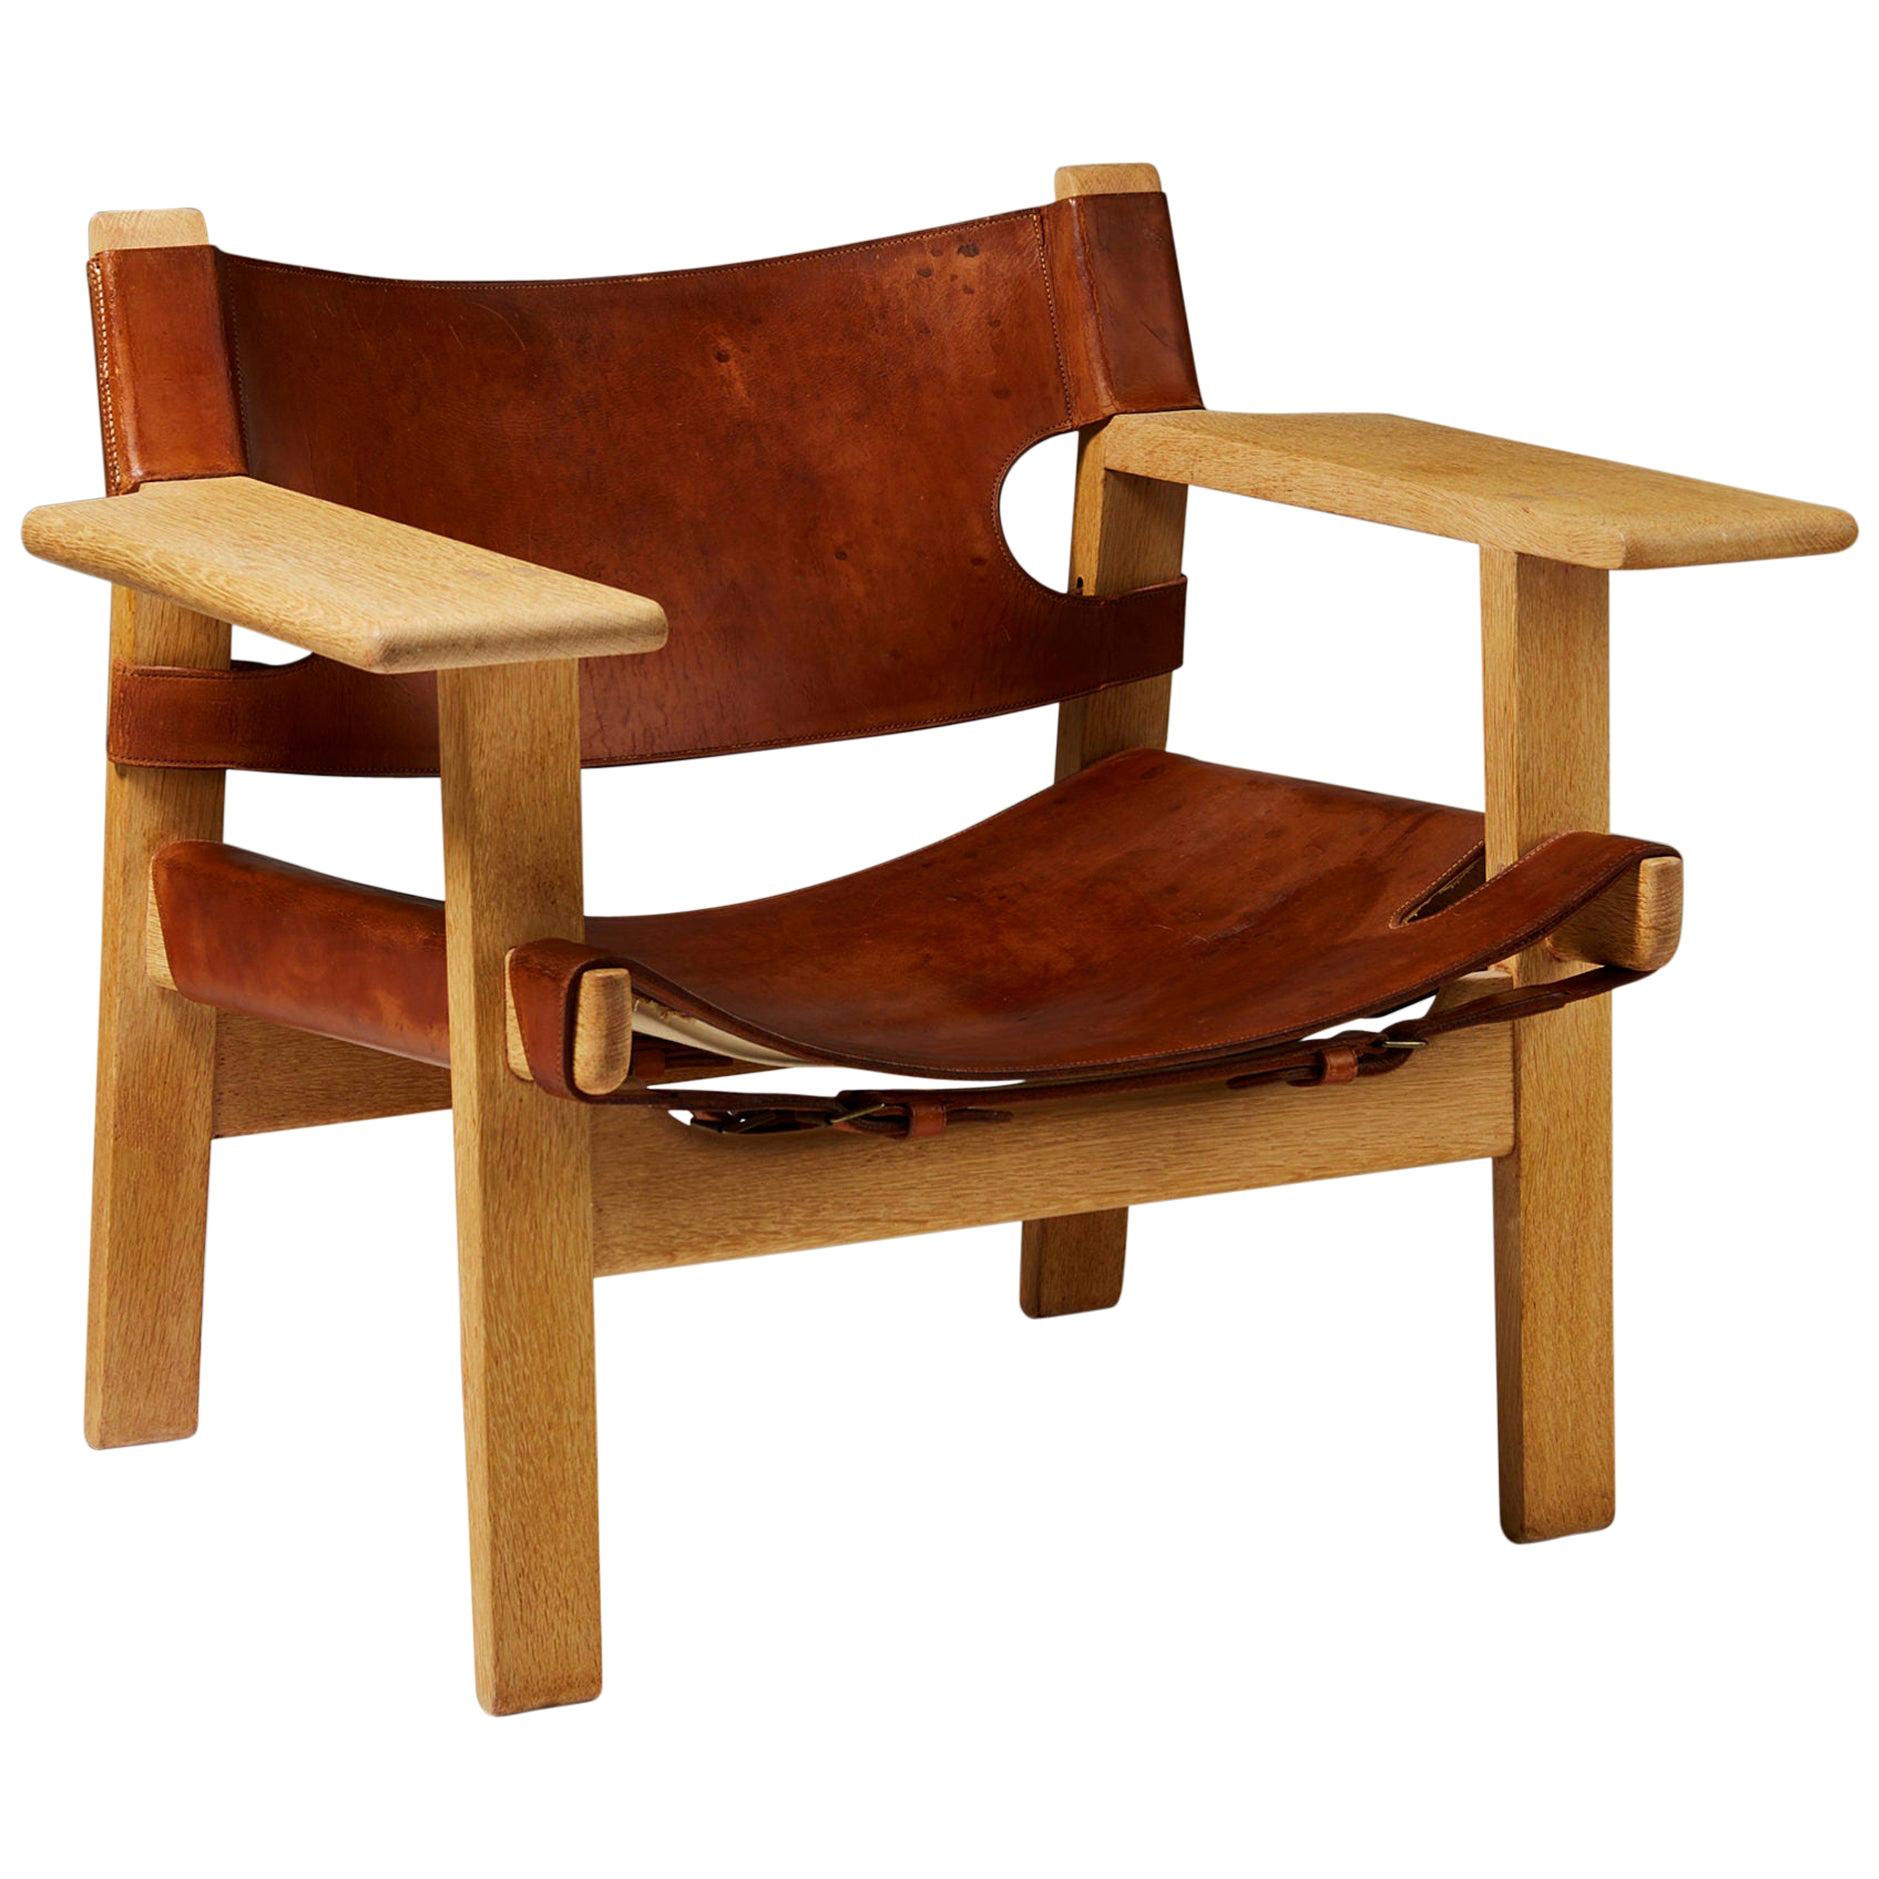 Armchair “Spanish” Designed by Børge Mogensen for Erhard Rasmussen, Denmark